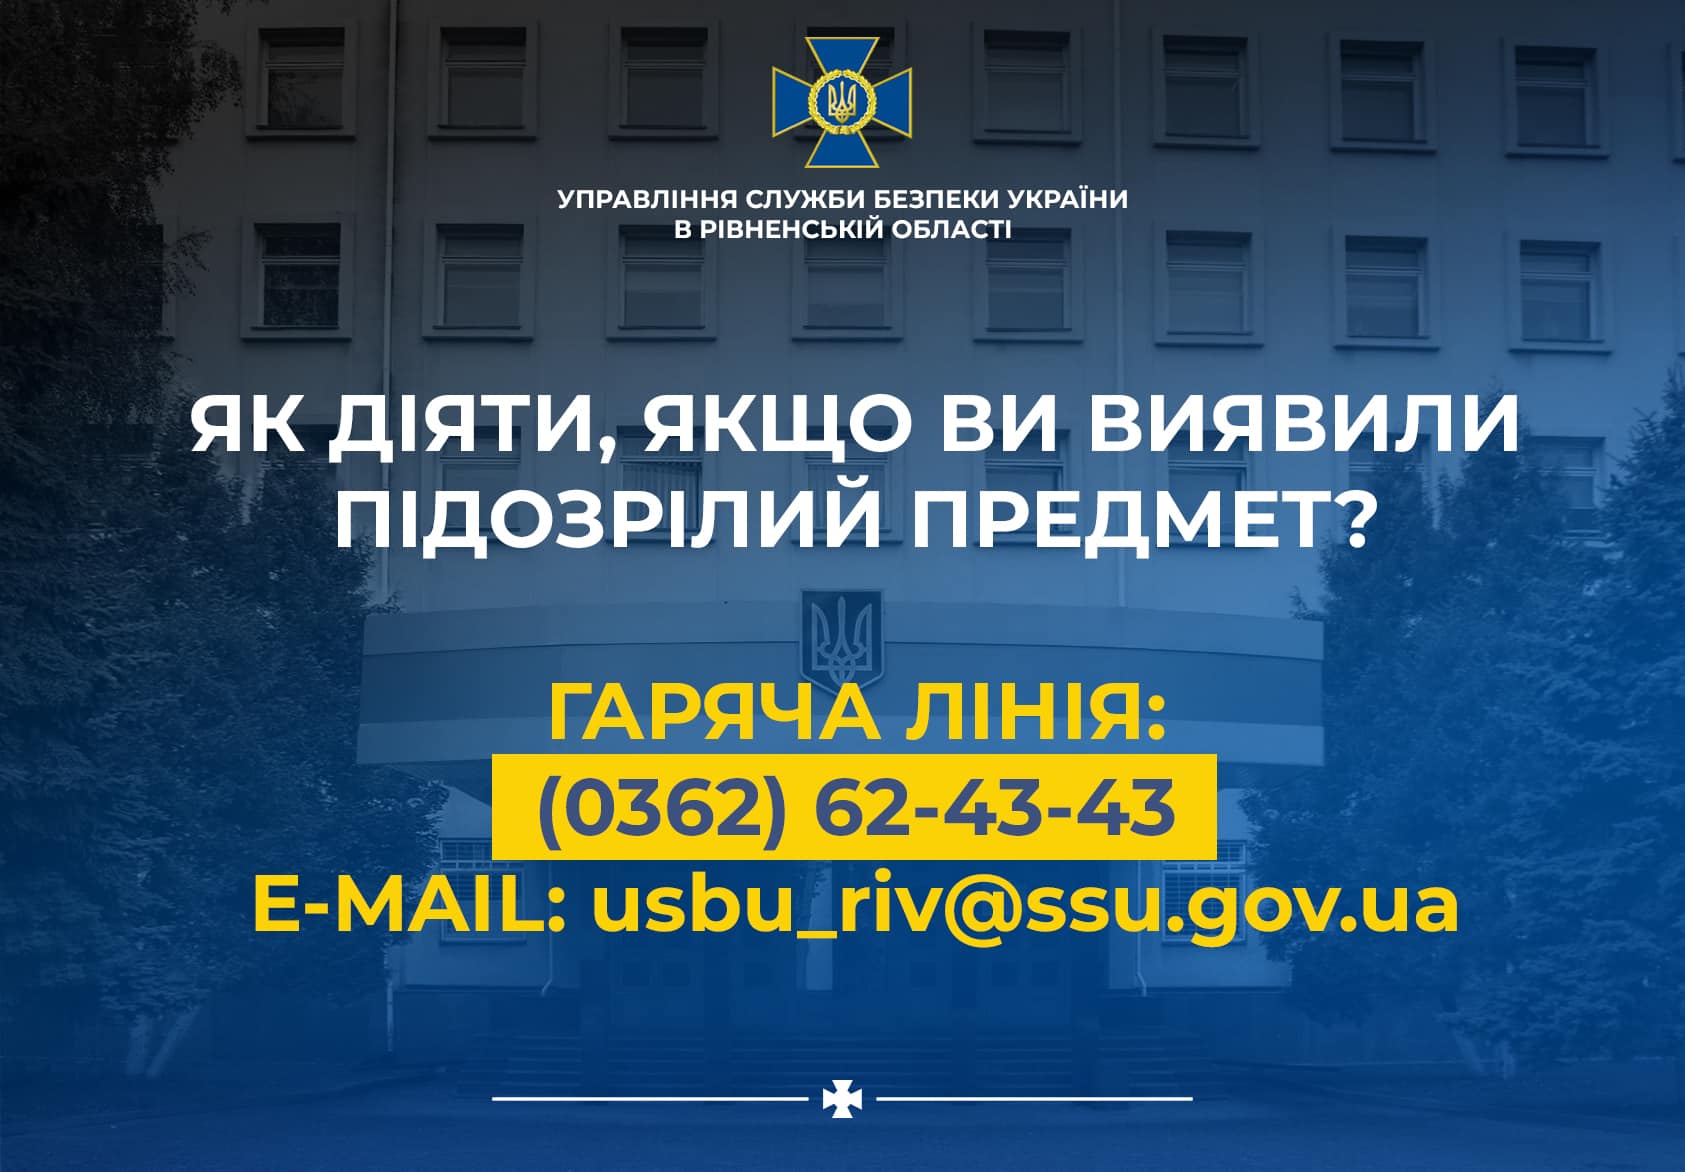 Рекомендації від СБУ Рівненщини: «Як діяти, якщо ви виявили підозрілий предмет?»